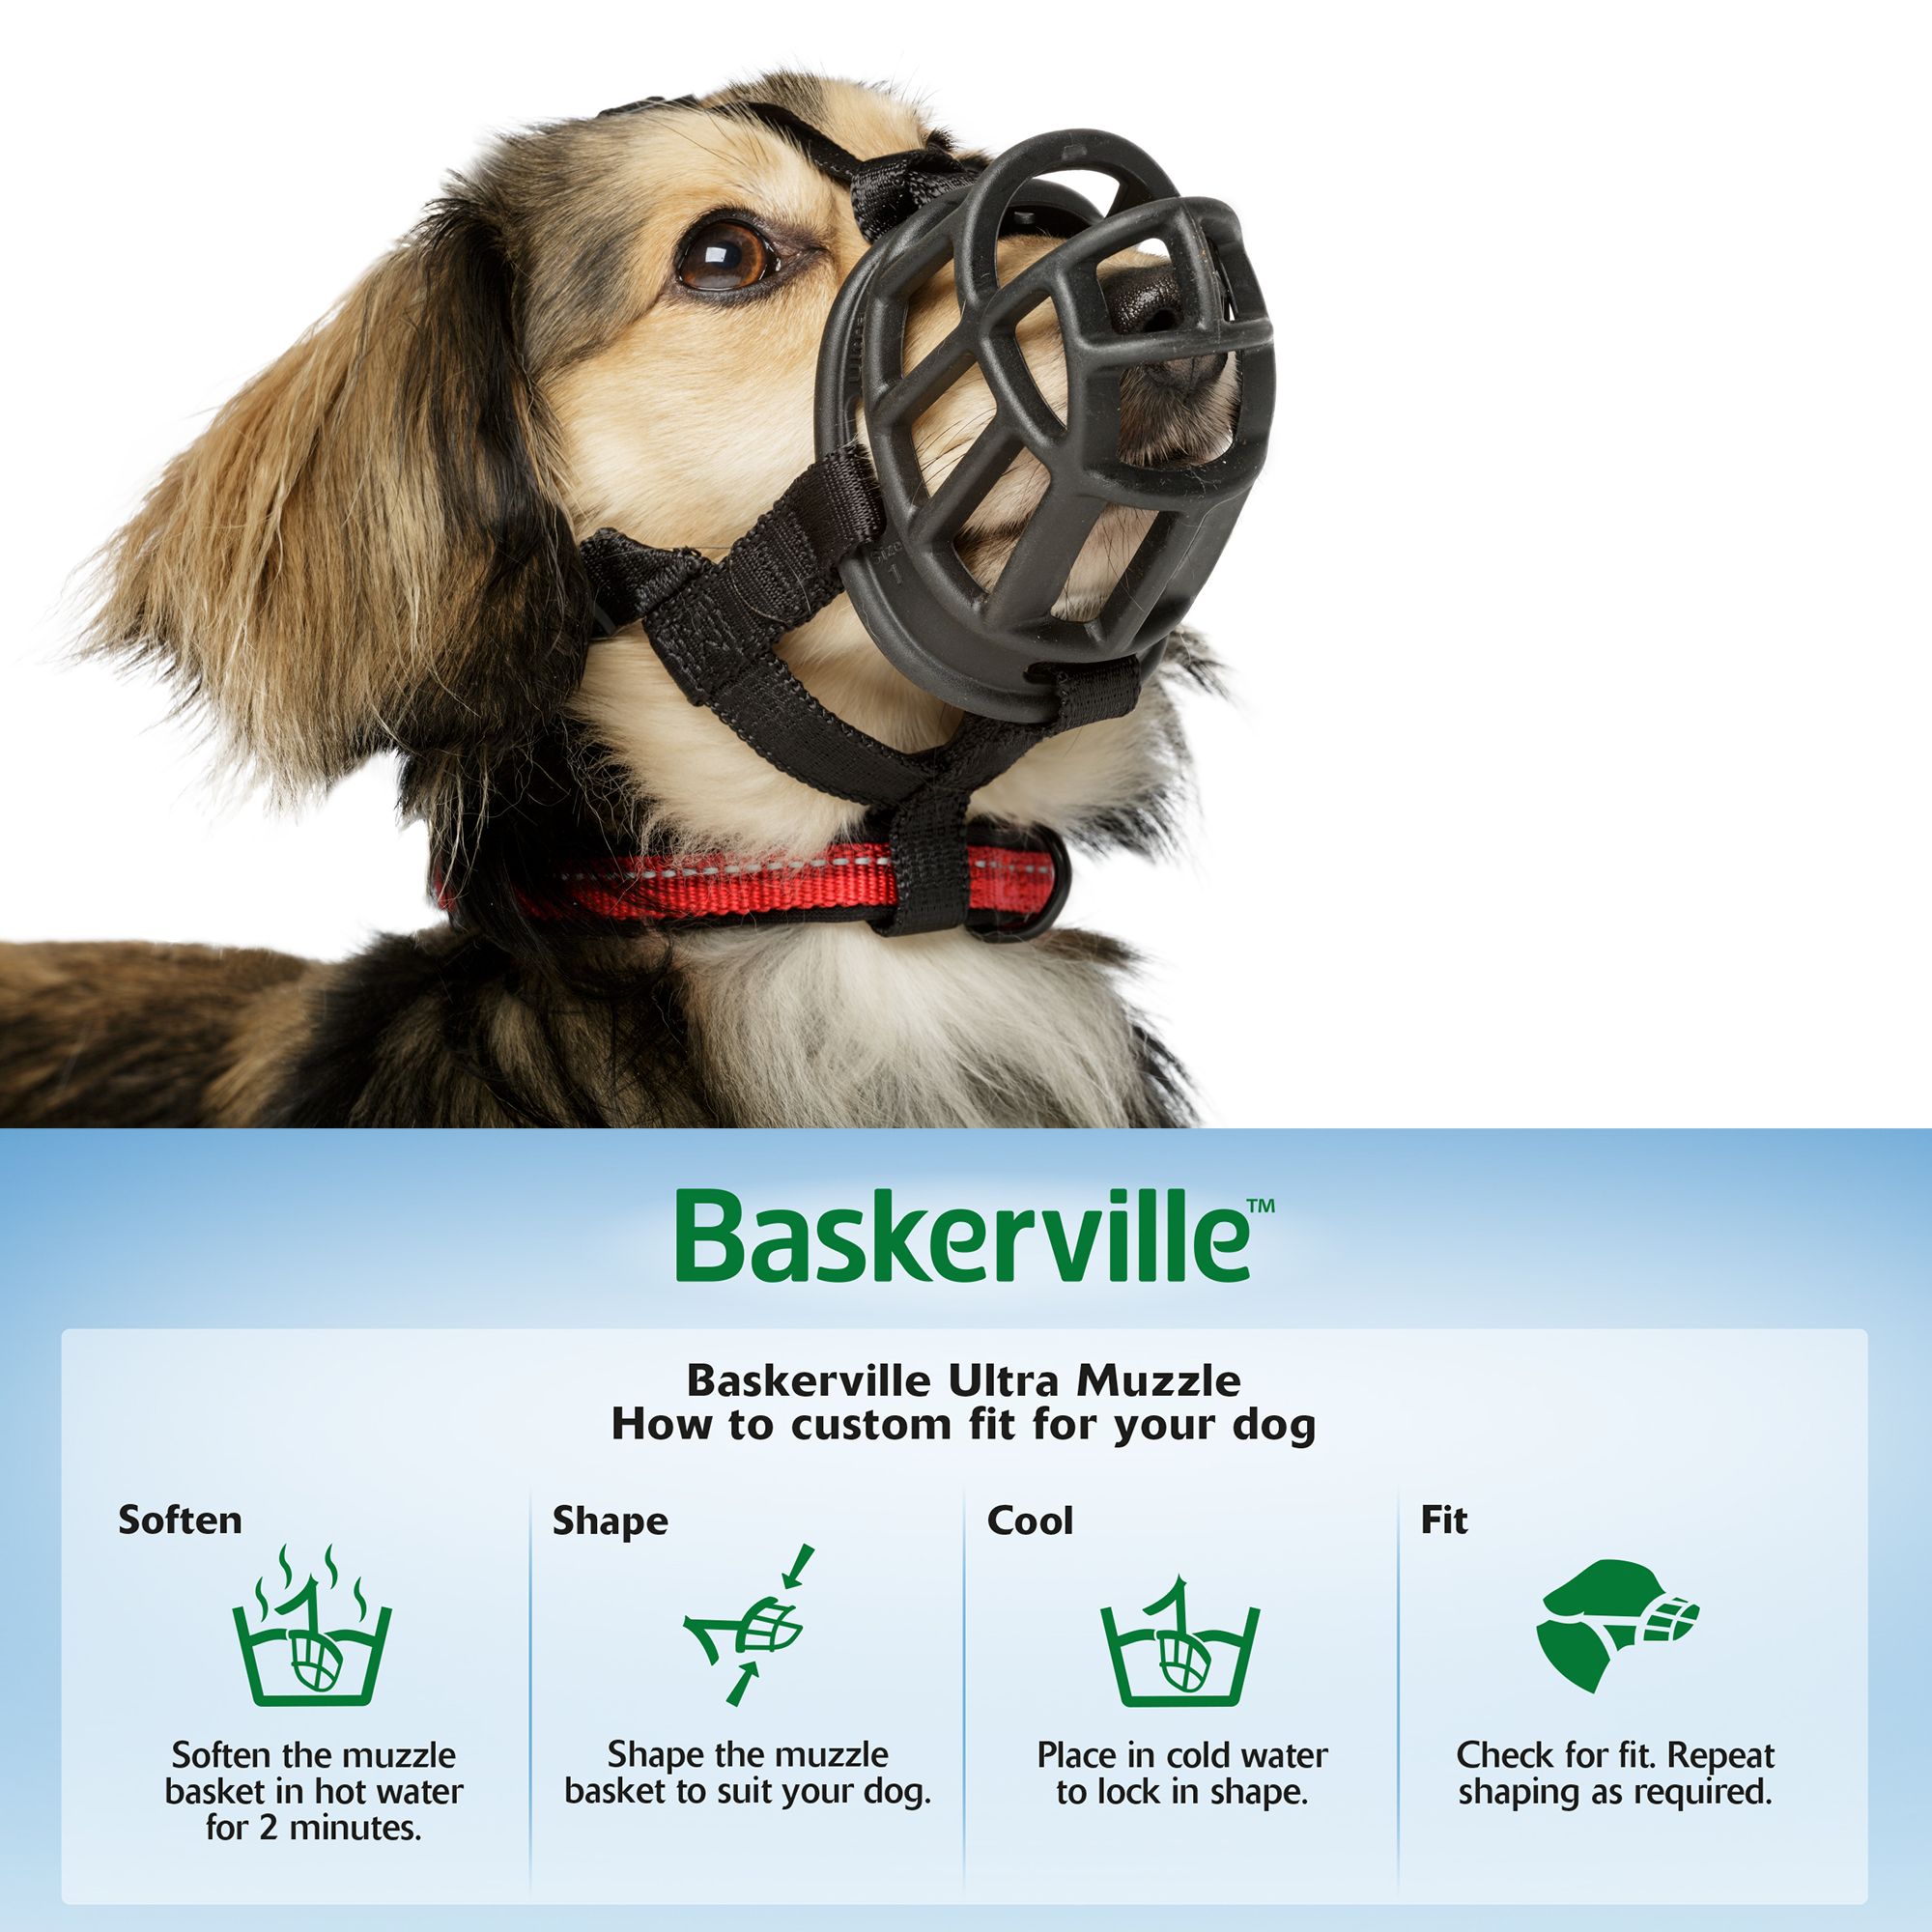 baskerville dog muzzle size guide